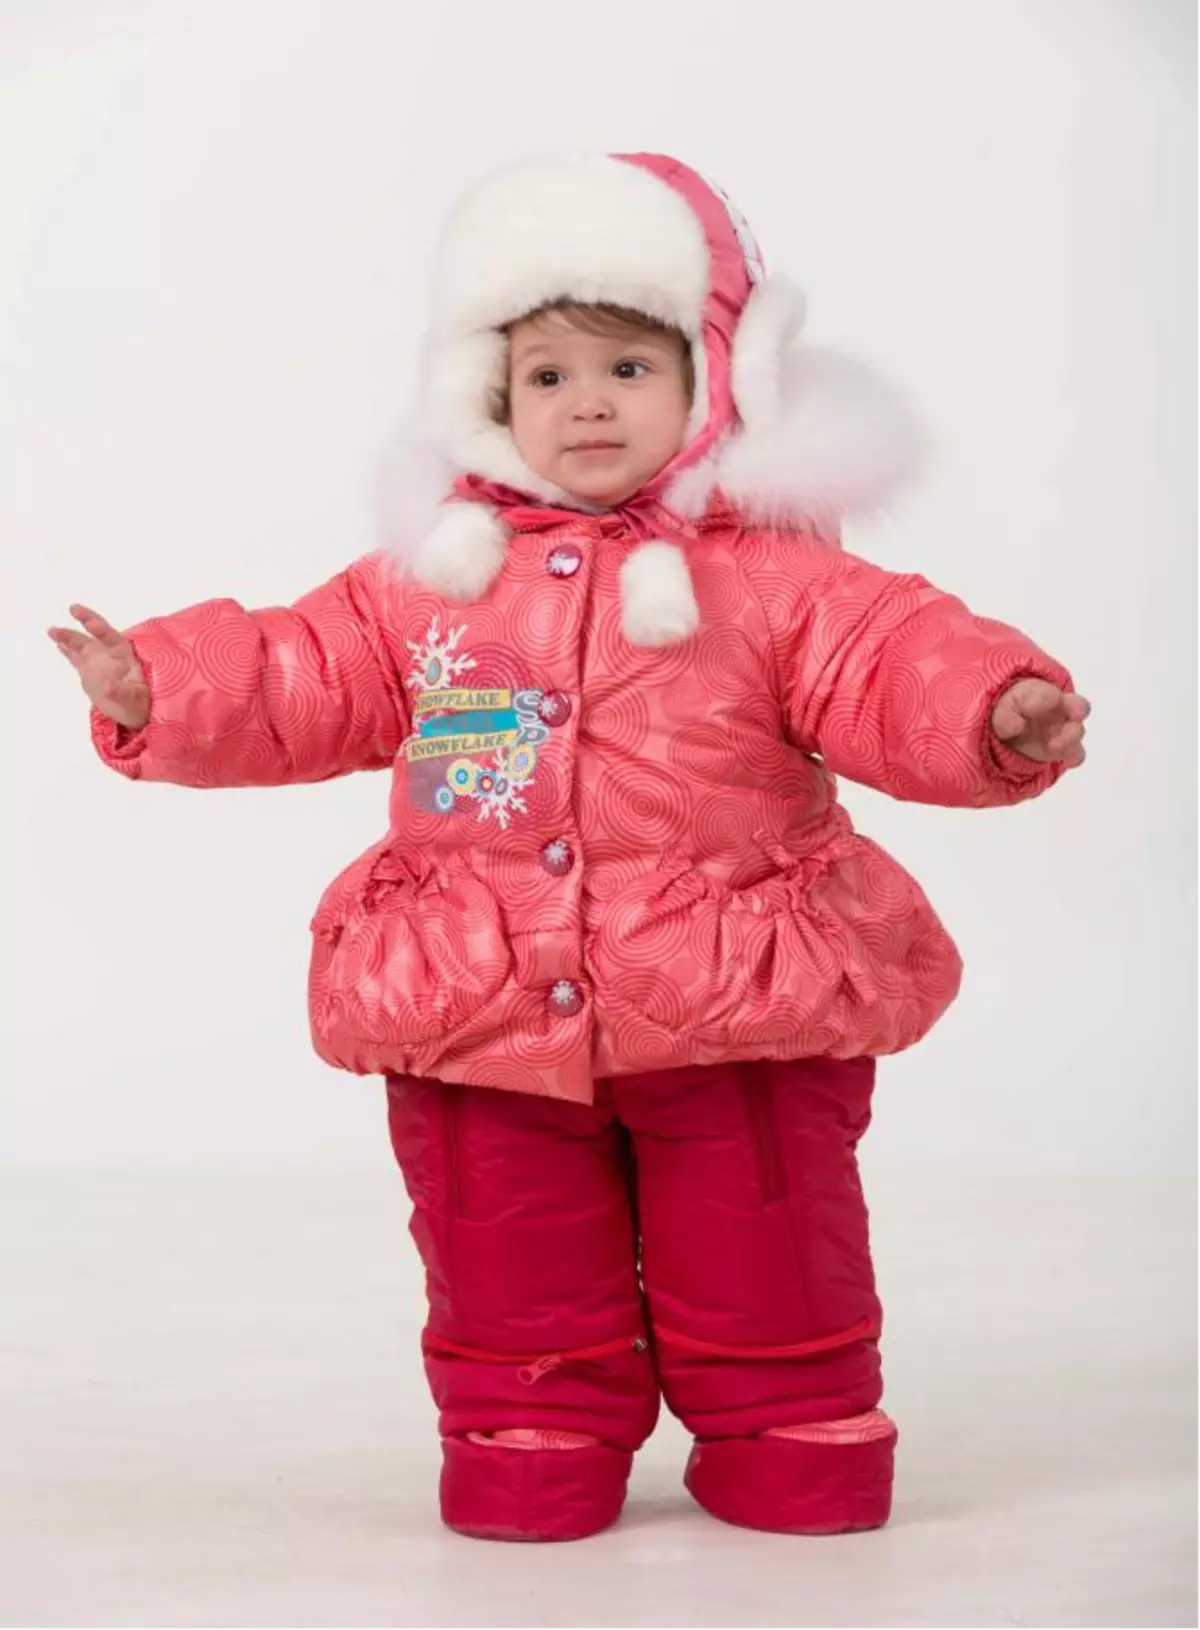 Téli öltöny a lány számára (77 fotók): Valianly, Kiko és Monkler, Gusti, Meleg membrán, finn a Reim-től, szigetelt 13286_69